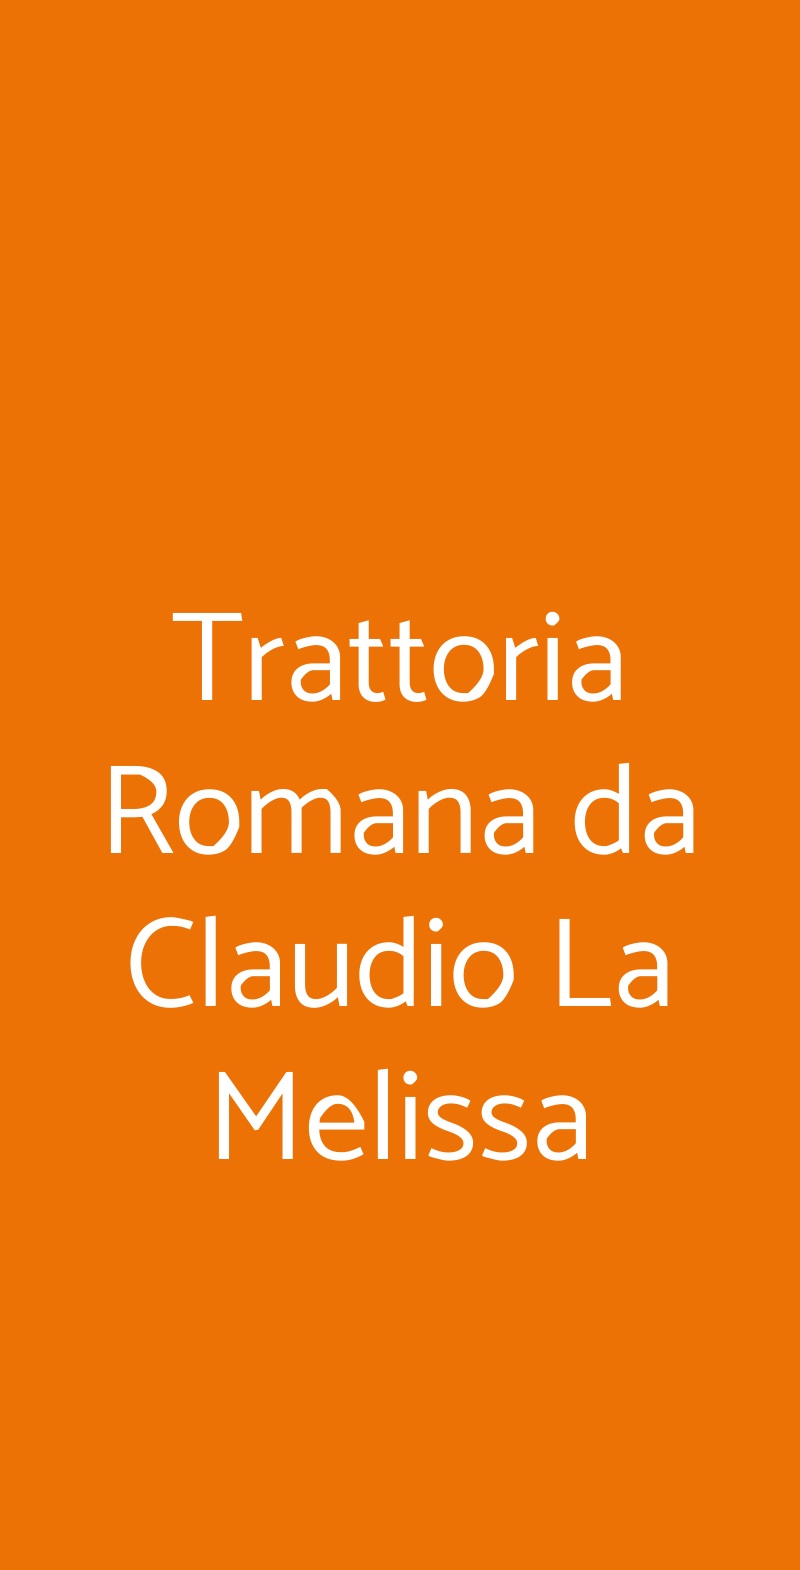 Trattoria Romana da Claudio La Melissa Roma menù 1 pagina